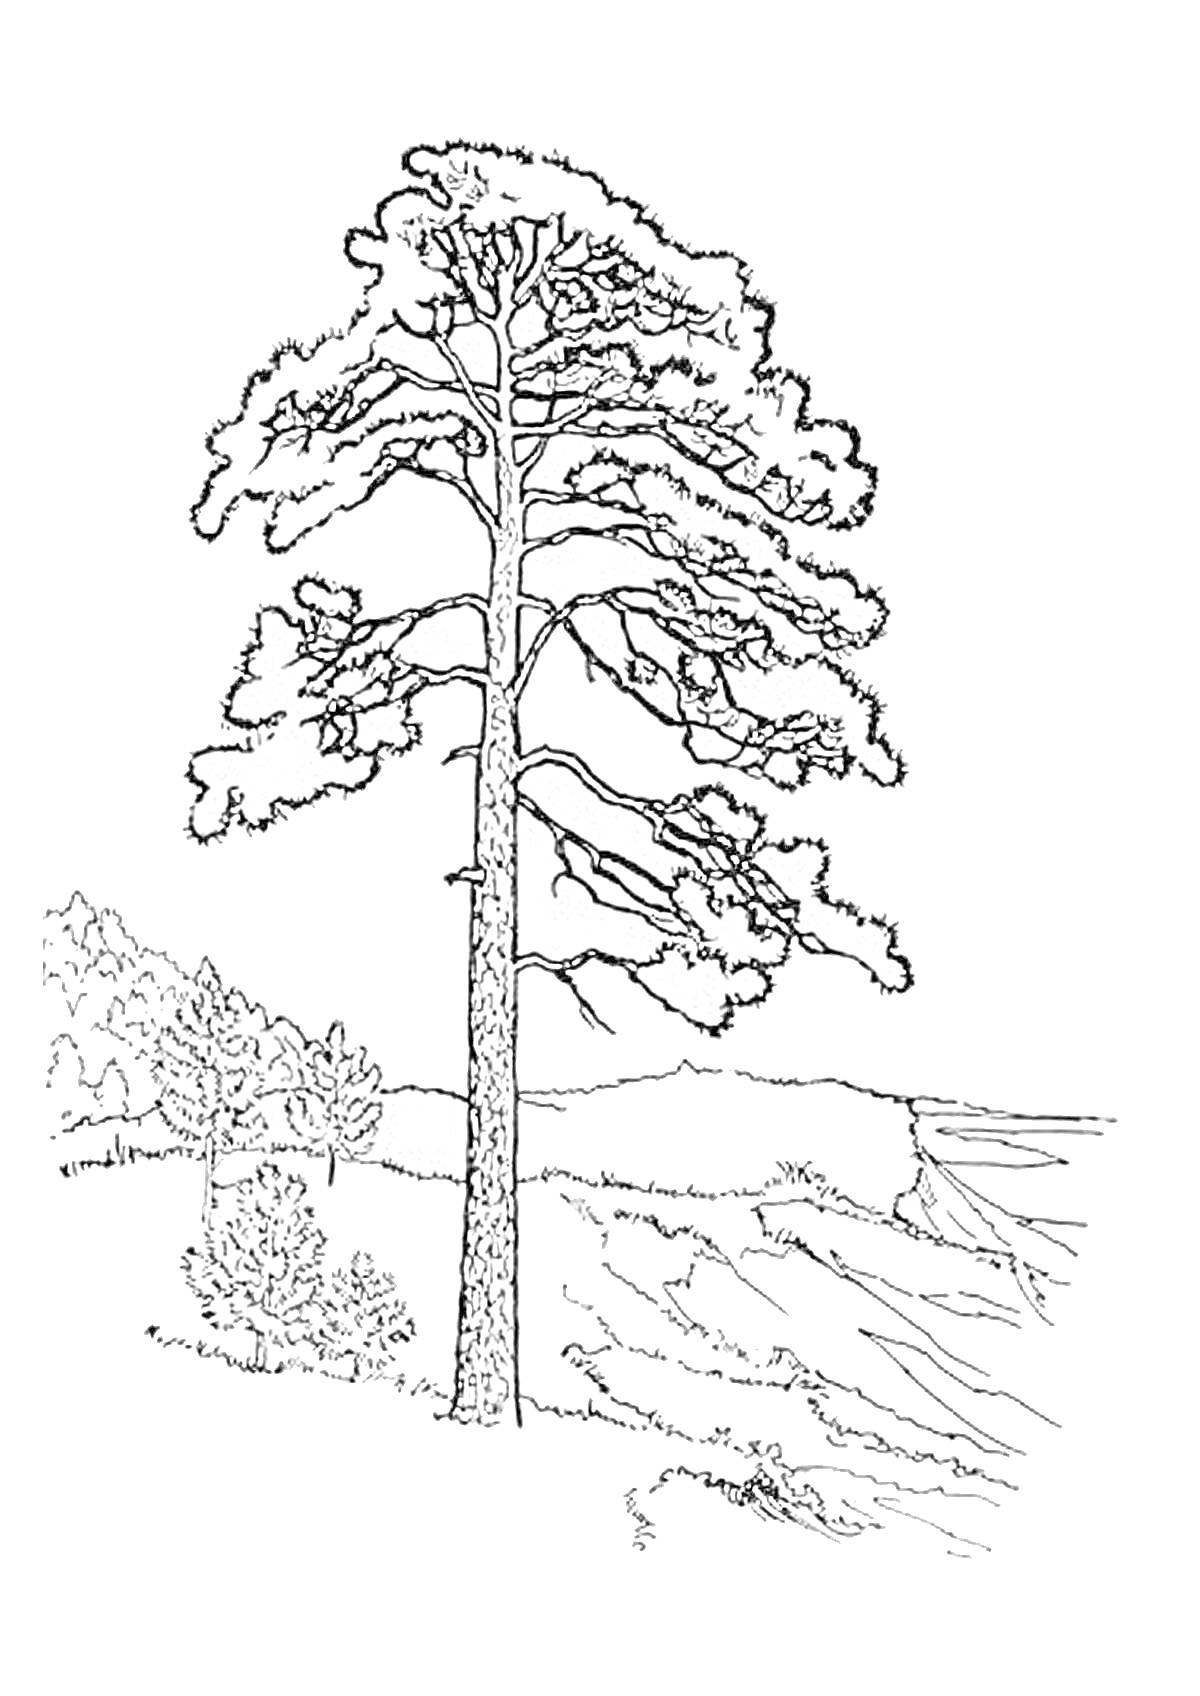 Сосна на холме с фоном из деревьев и склону